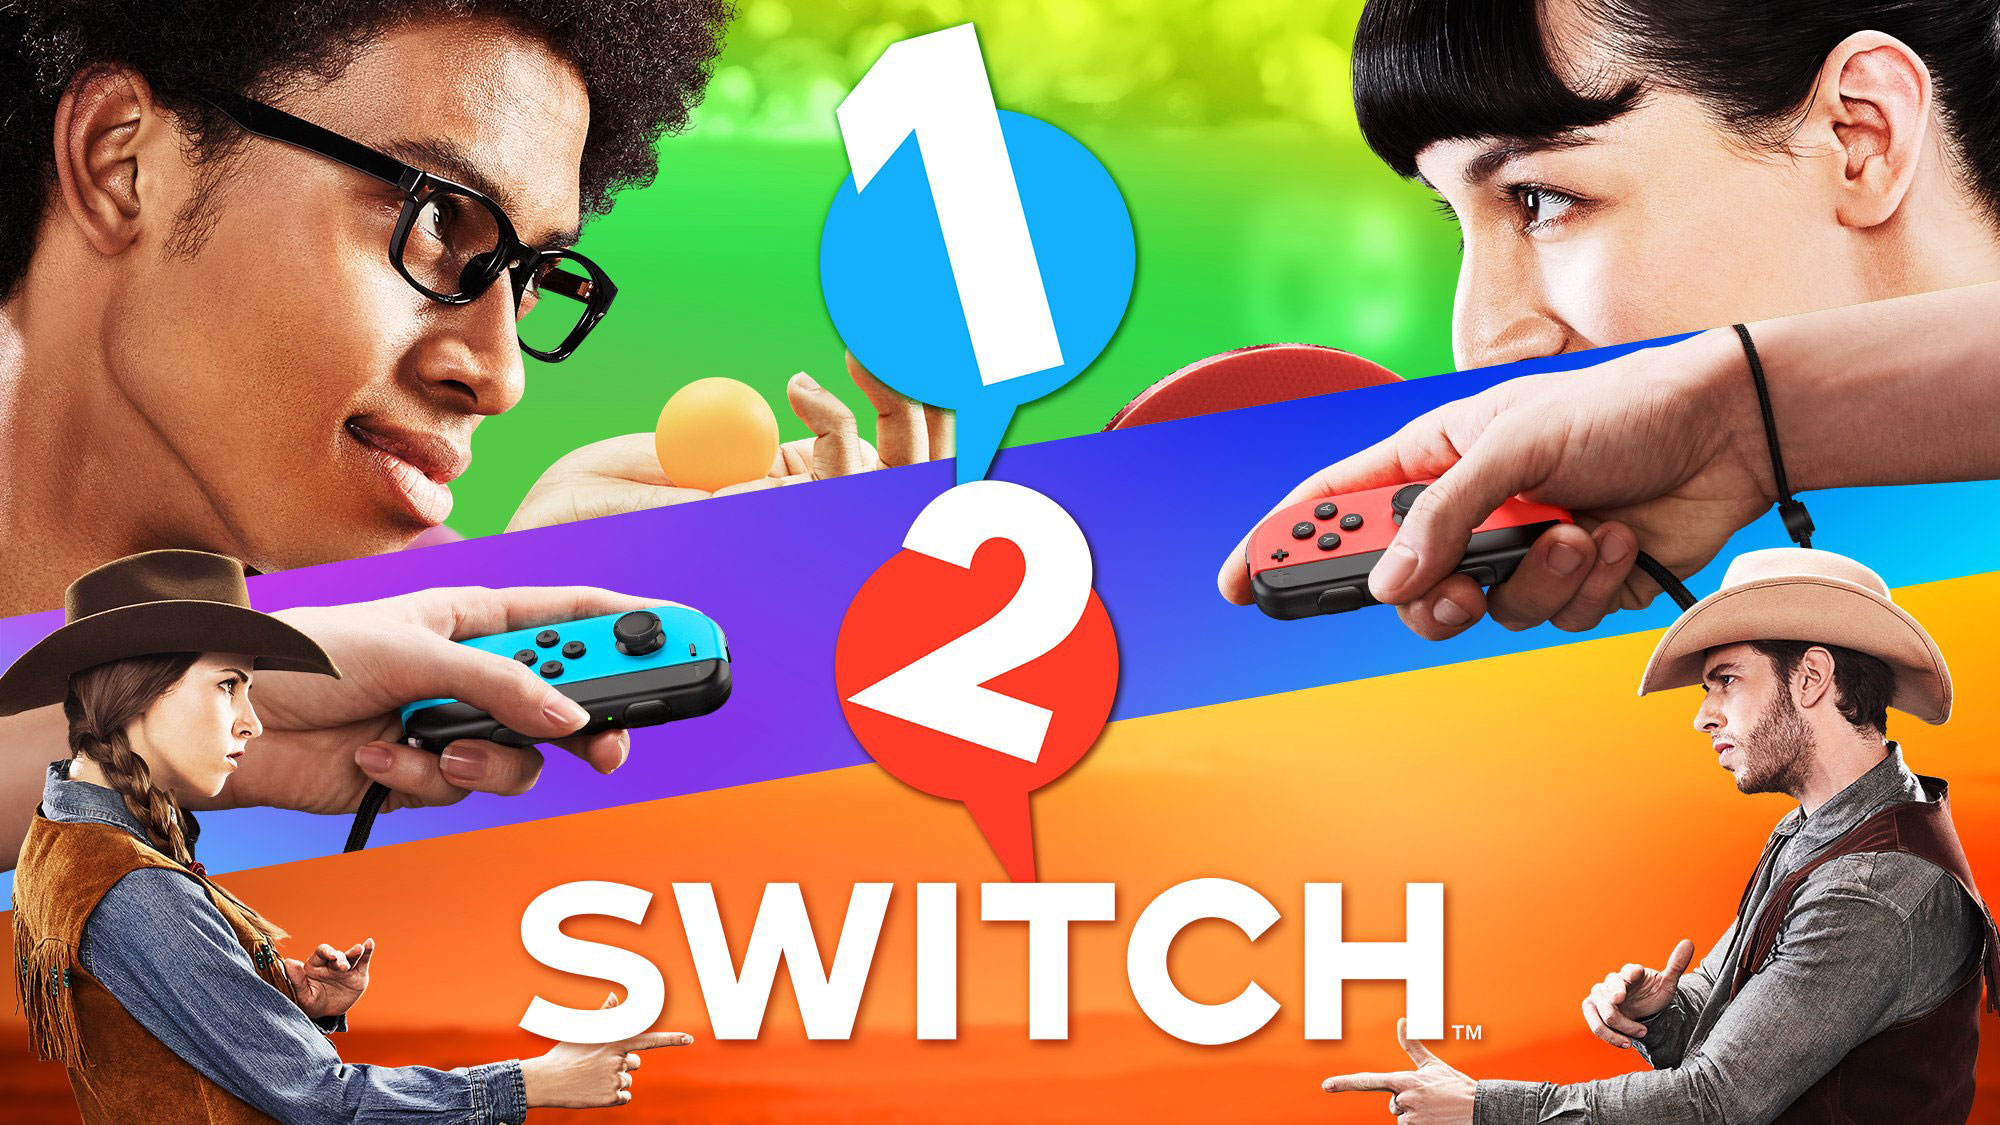 1-2-Switch ist ein Partyspiel für Nintendo Switch